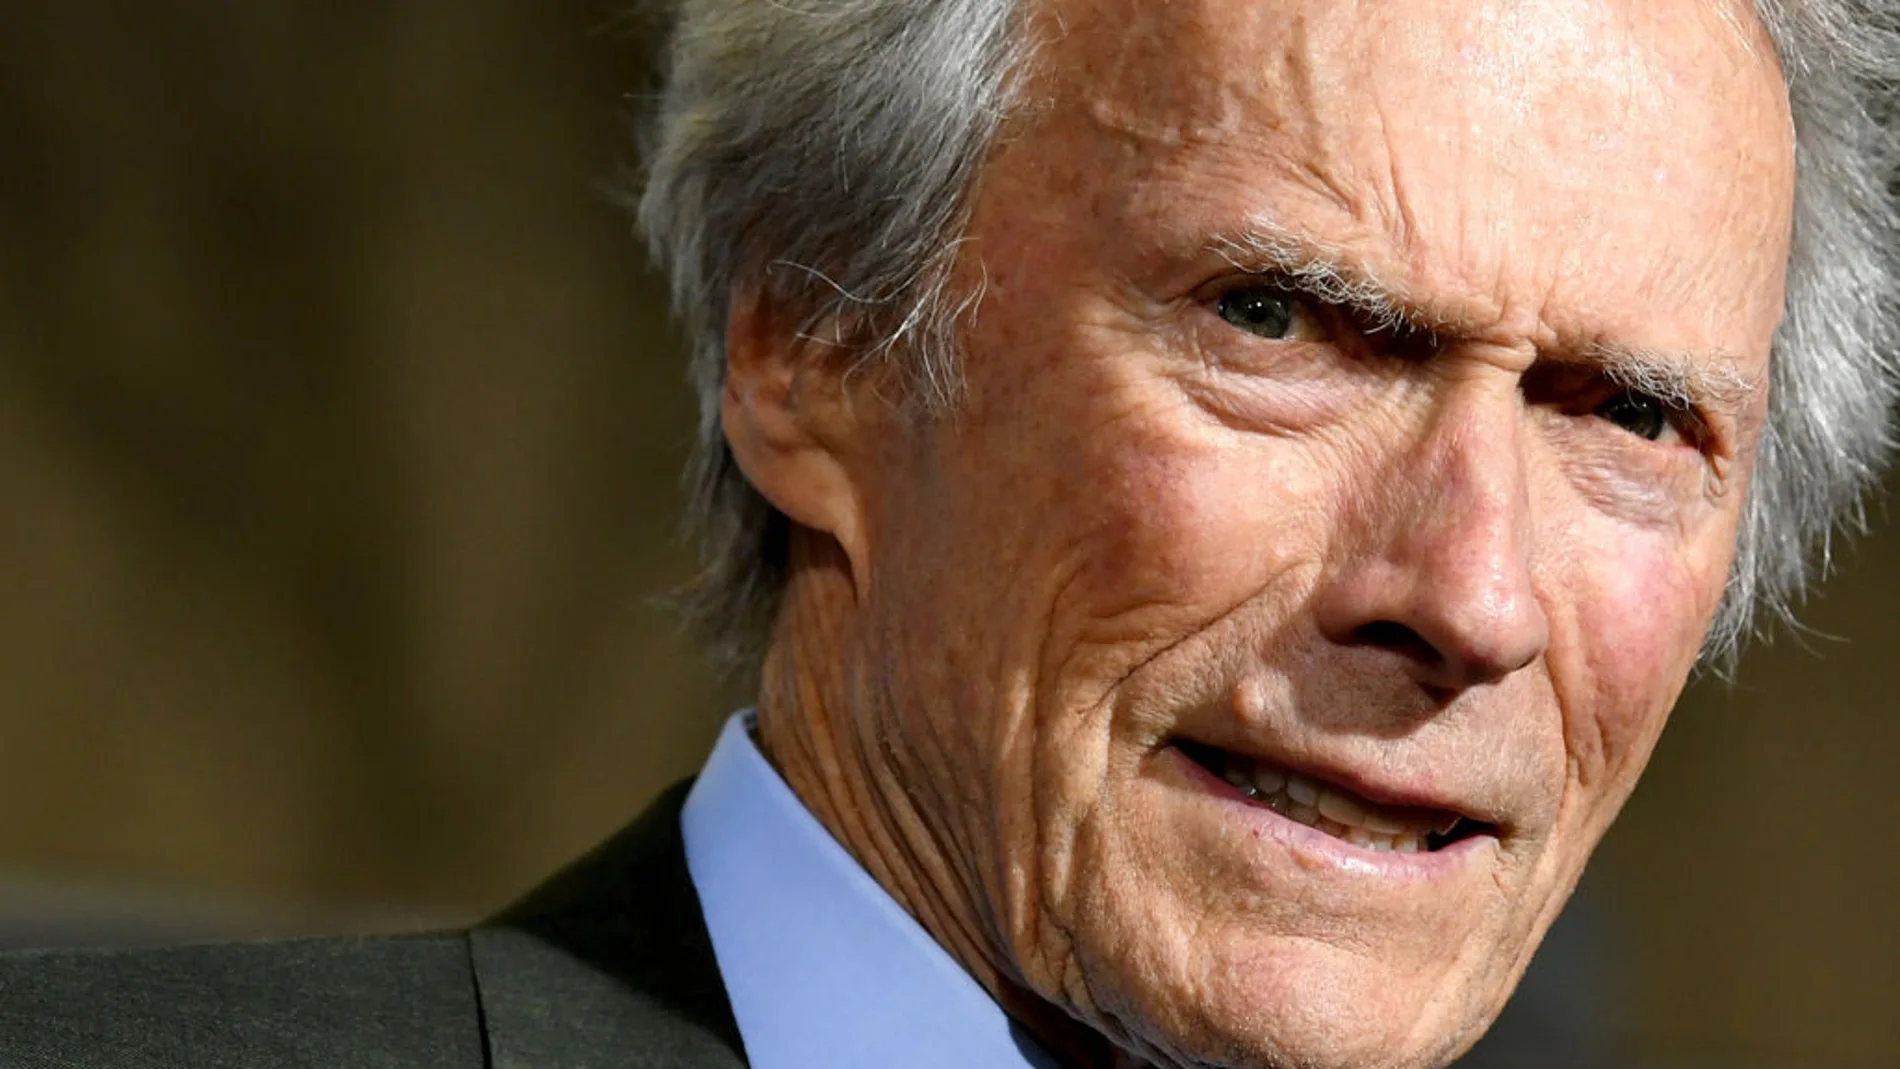 Clint Eastwood cumple 92 años: estas son las 10 películas más míticas del actor y director